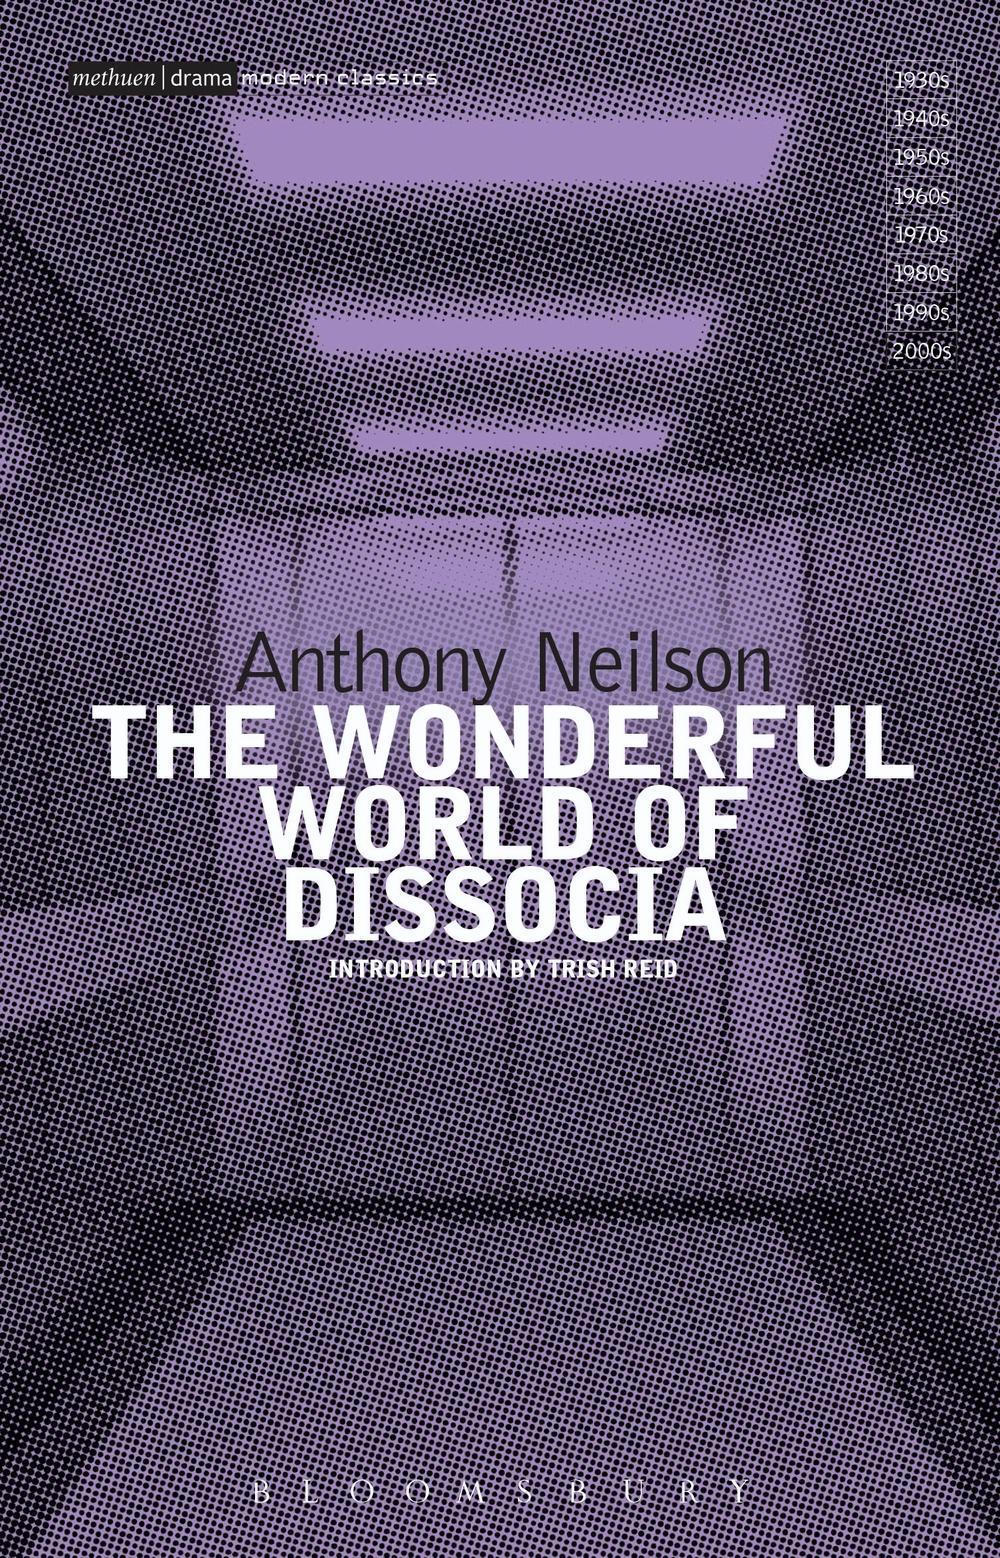 Wonderful World of Dissocia - Anthony Neilson